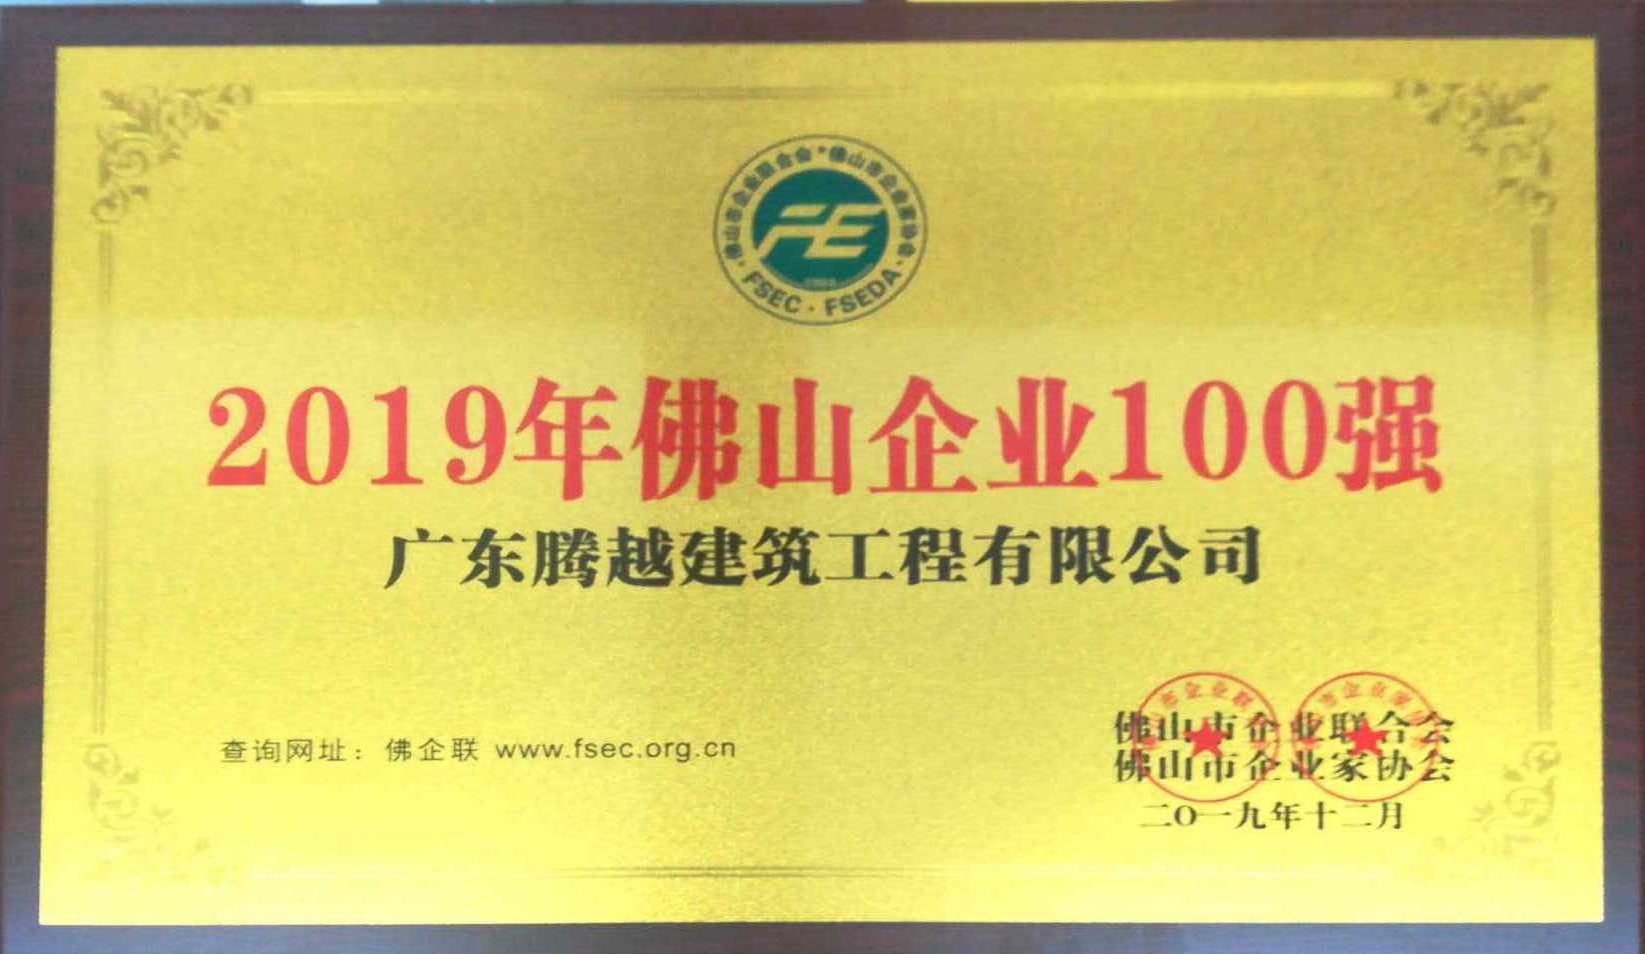 2019年佛山企业100强（真人打牌赢钱的平台）